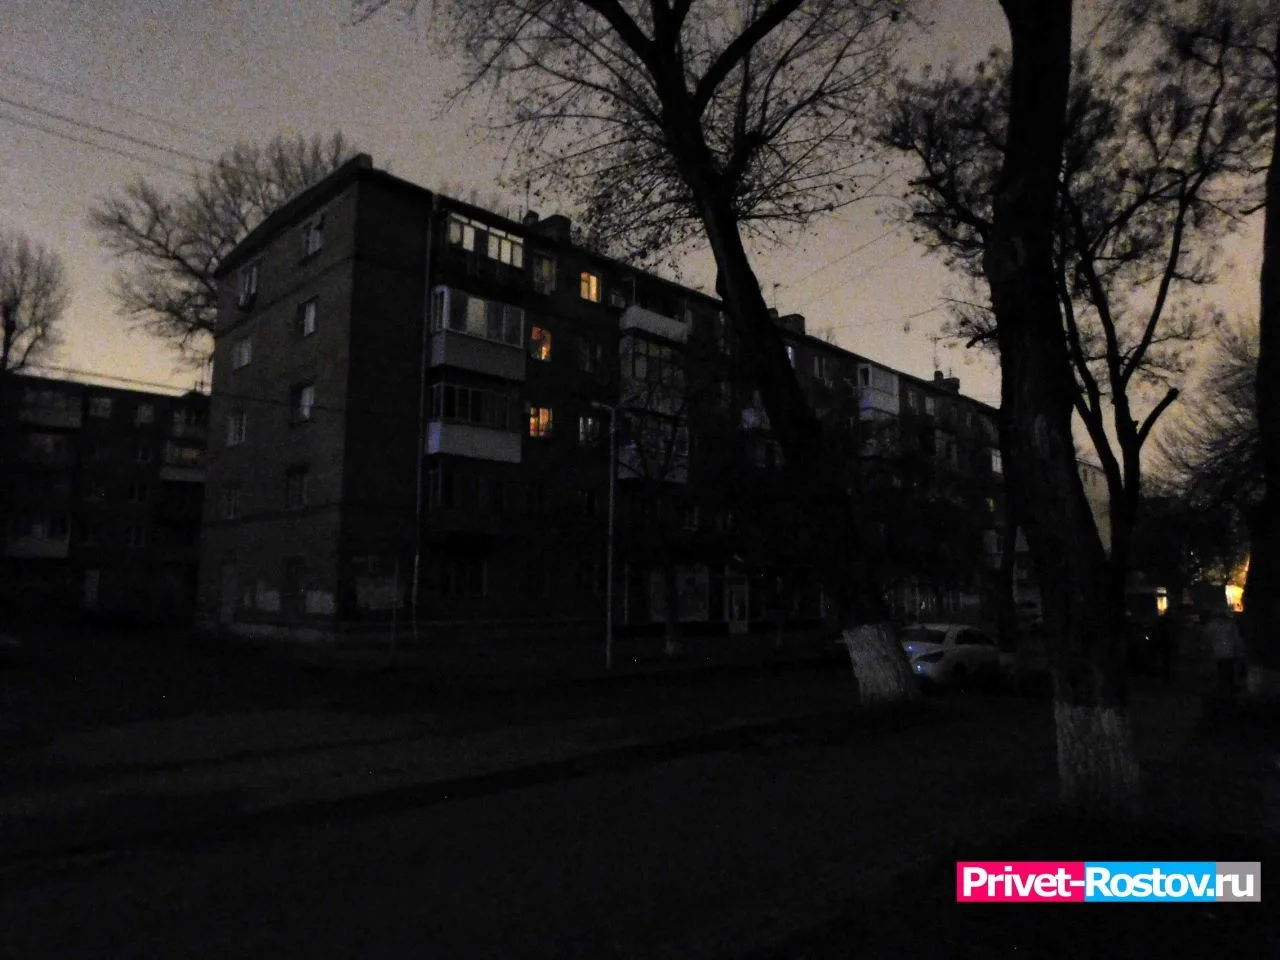 Три громких взрыва напугали ночью жителей из Суворовского в Ростове